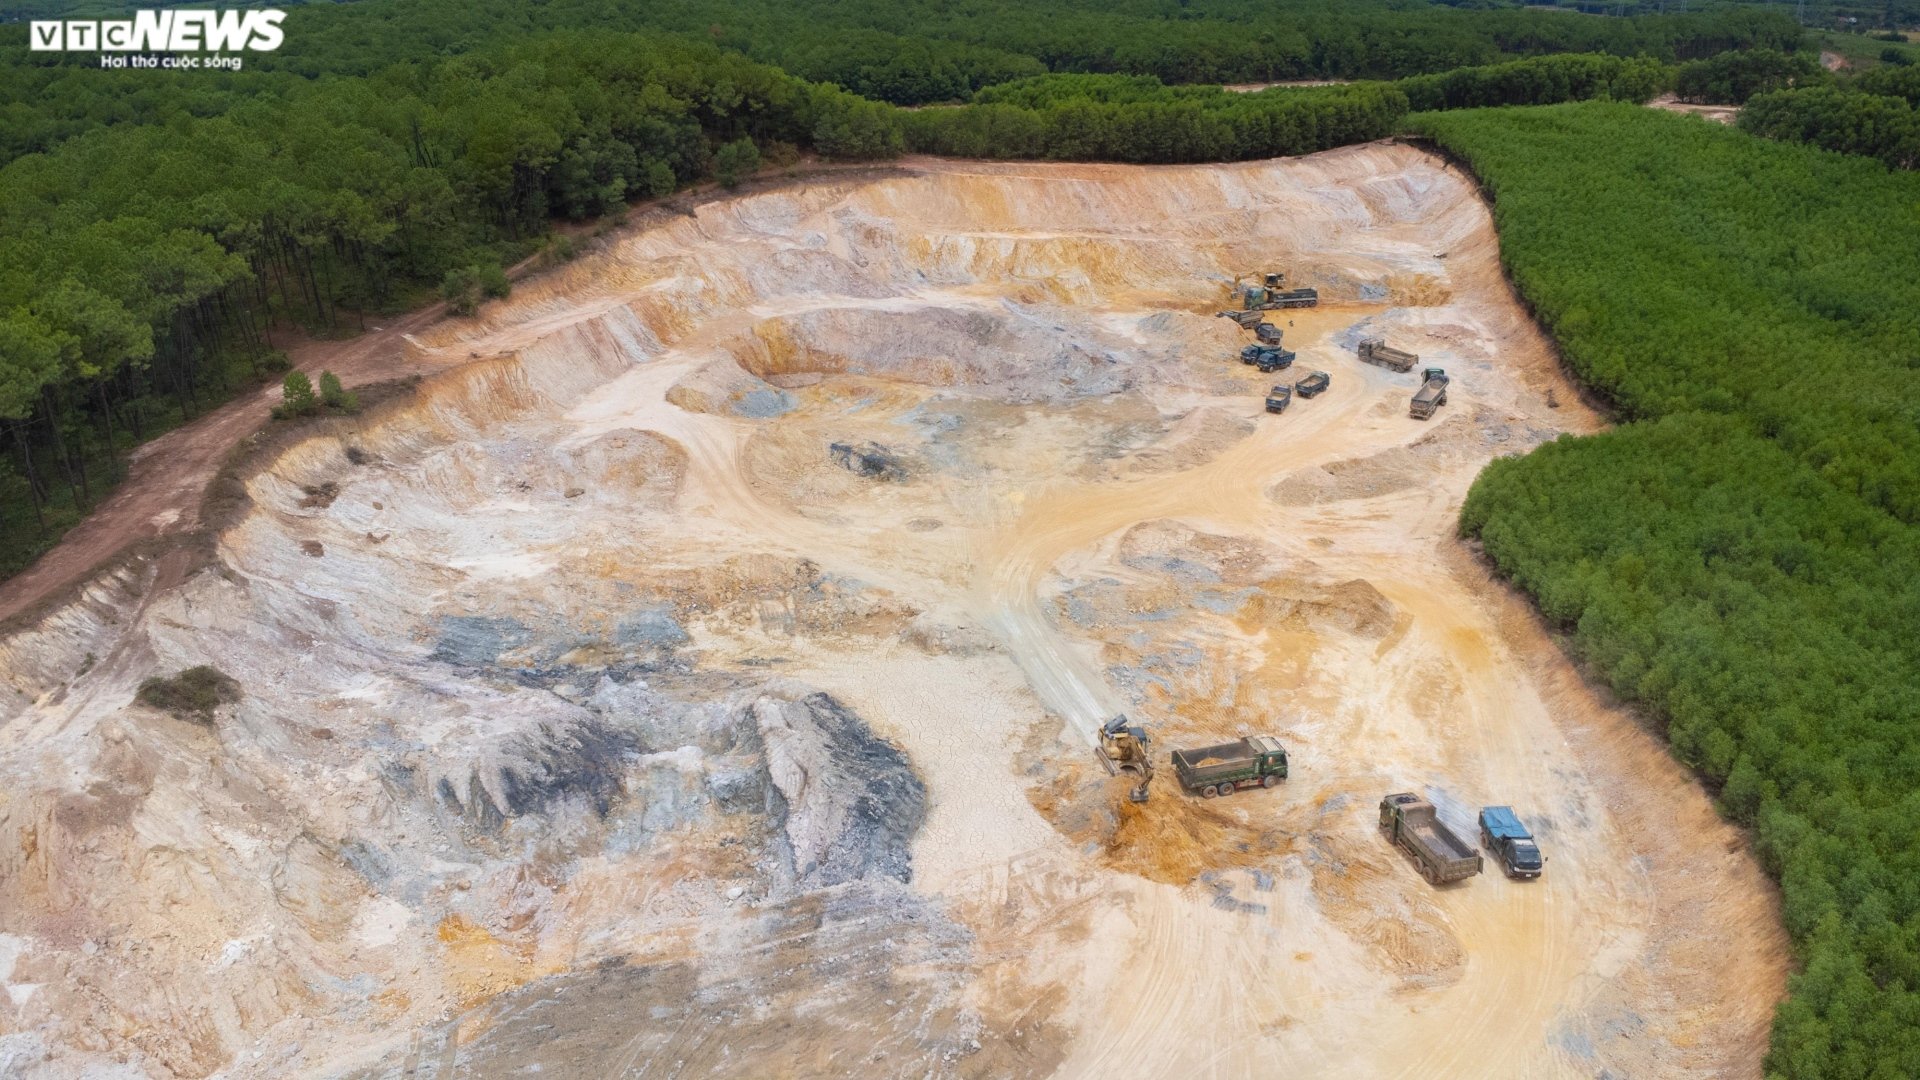 Thâm nhập đại công trường khai thác khoáng sản sai phép ở Thừa Thiên - Huế - Ảnh 8.